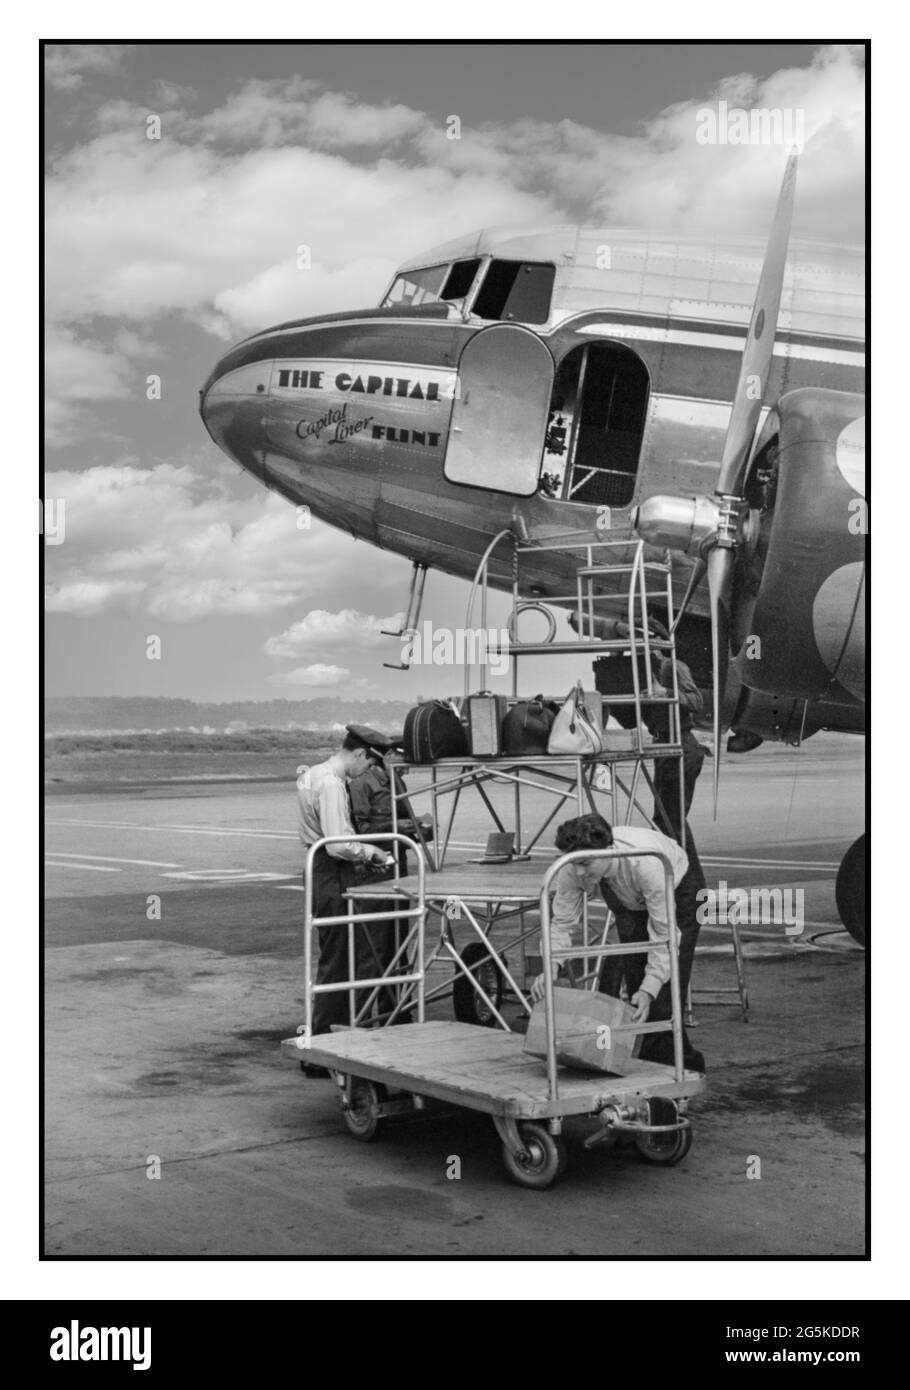 Kommerzieller Flug des 2. Weltkriegs 1940 Gepäckladen auf einem DC3-Flugzeug auf dem städtischen Flughafen in Washington, D.C. Amerika USA Jack Delano Fotograf 1941. Juli. Vereinigte Staaten--District of Columbia--Washington (D.C.) Stockfoto